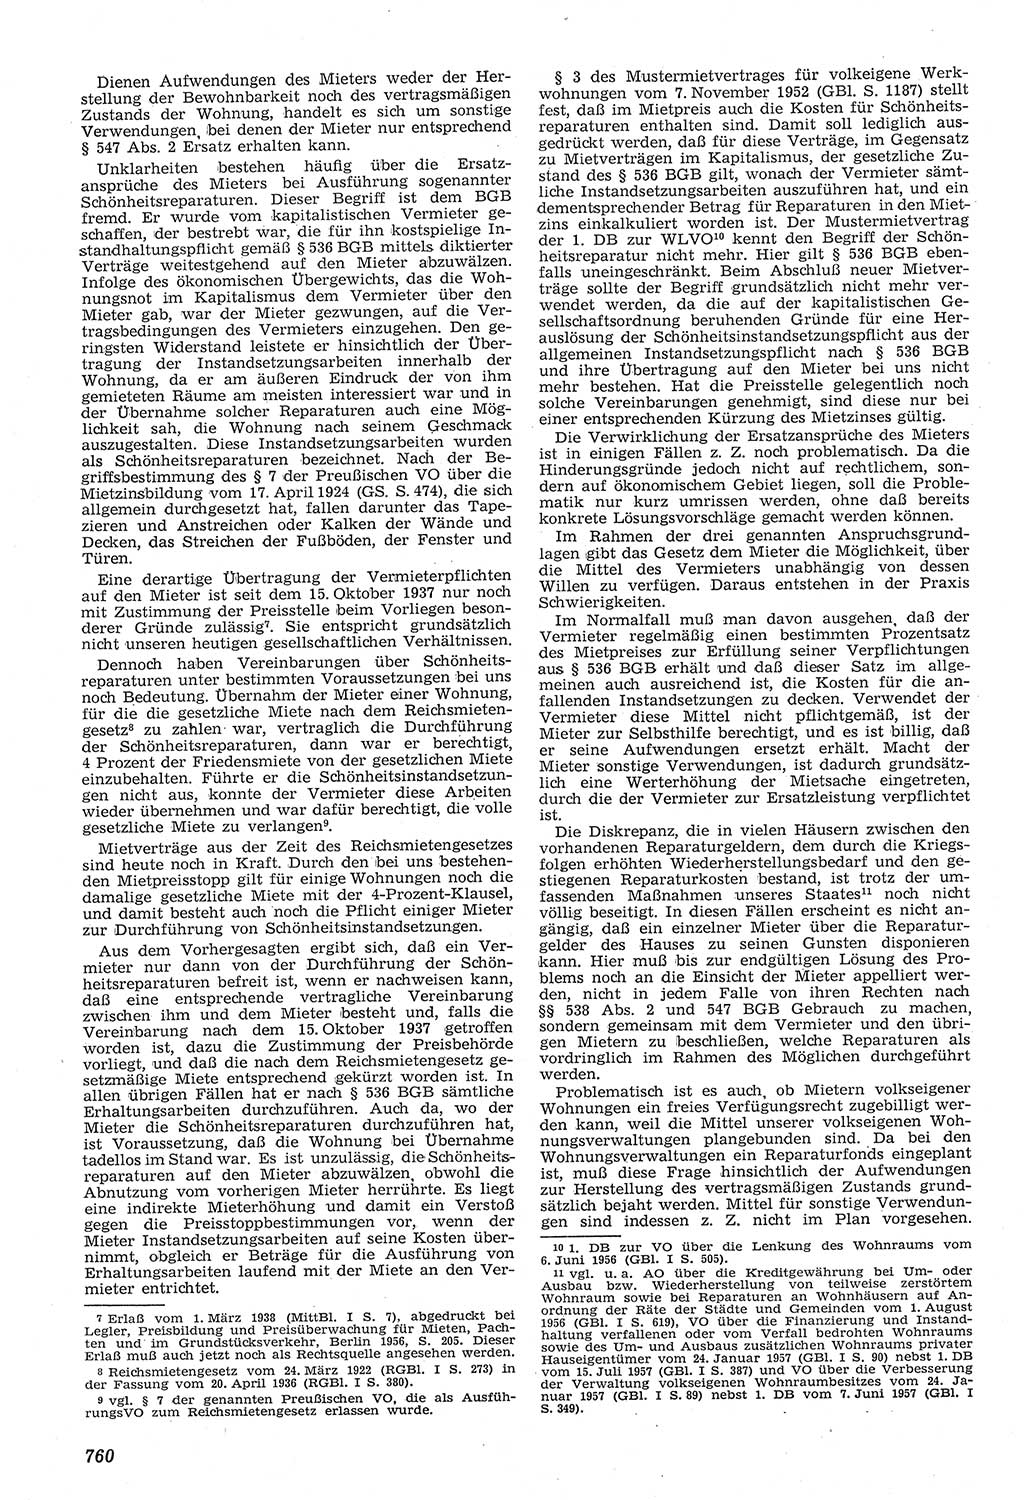 Neue Justiz (NJ), Zeitschrift für Recht und Rechtswissenschaft [Deutsche Demokratische Republik (DDR)], 11. Jahrgang 1957, Seite 760 (NJ DDR 1957, S. 760)